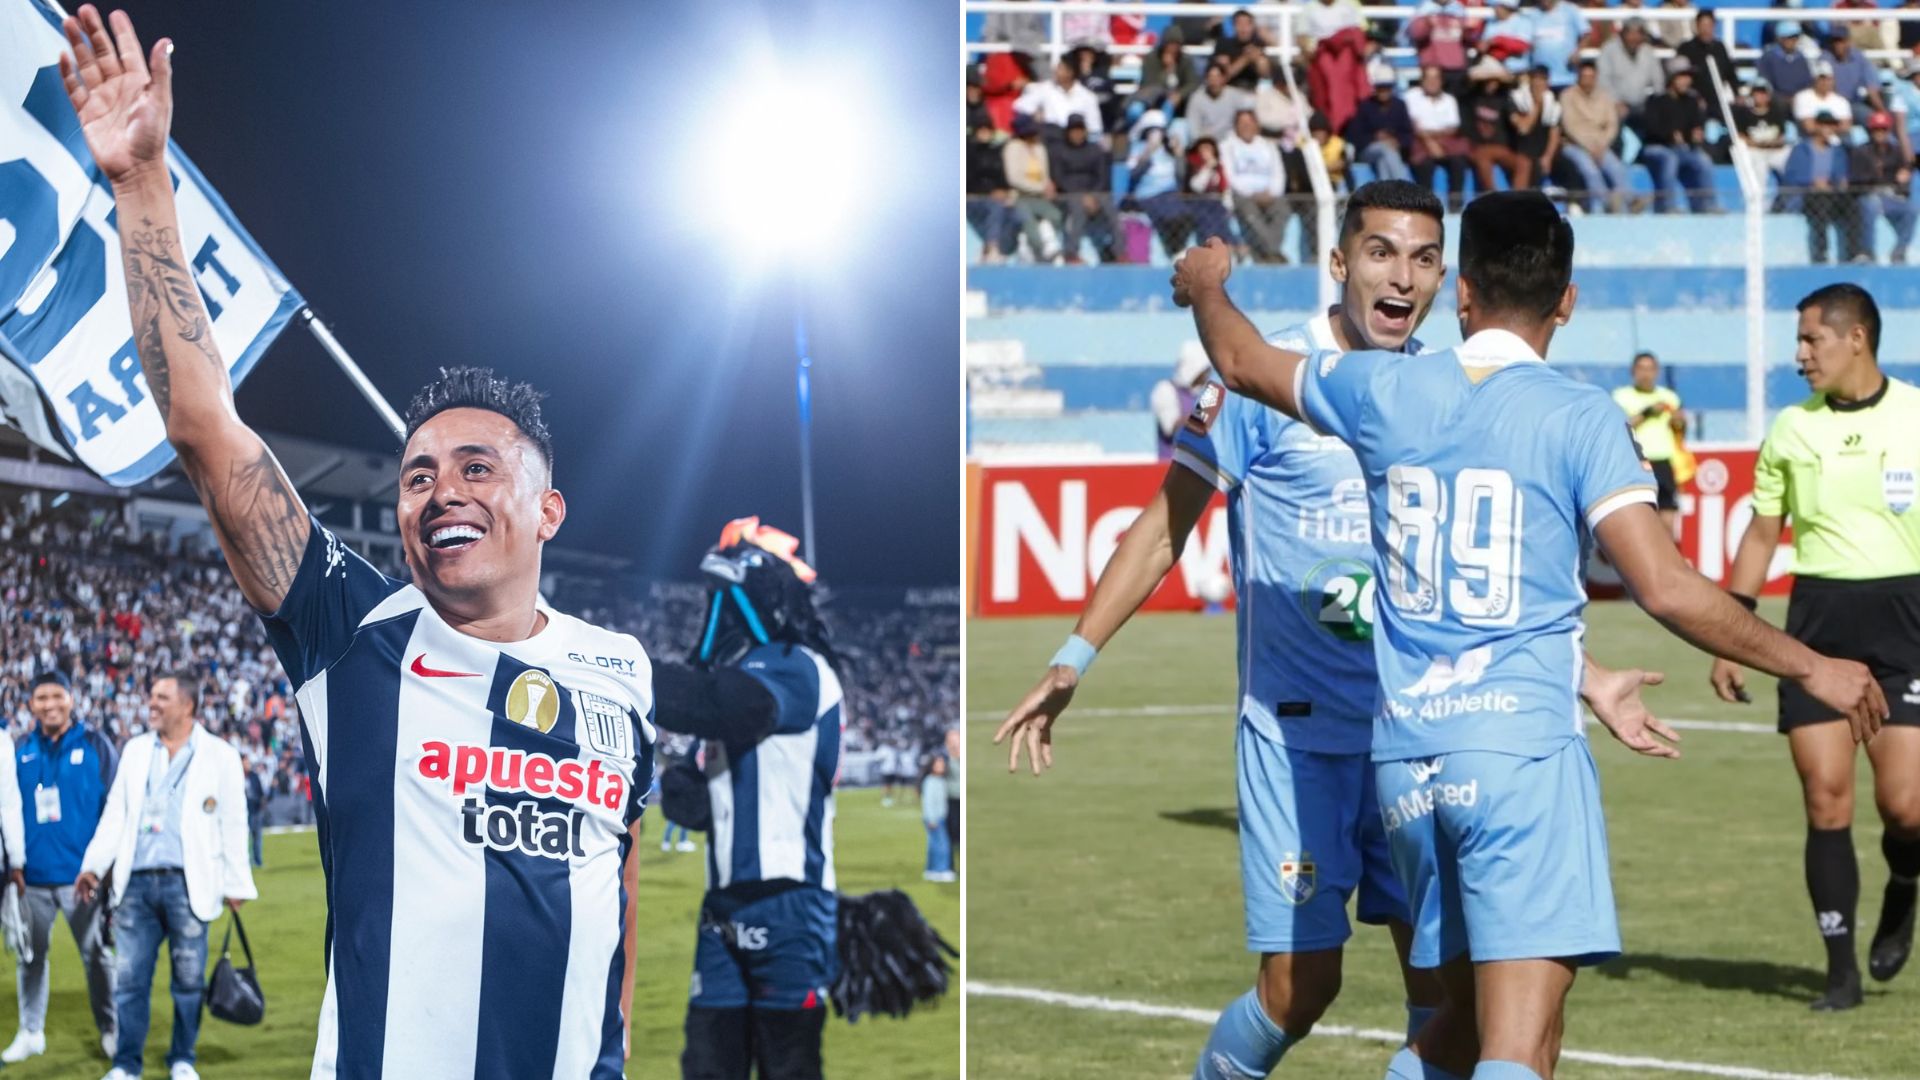 Alianza Lima vs ADT EN VIVO HOY: juegan en Huancayo por la Liga 1